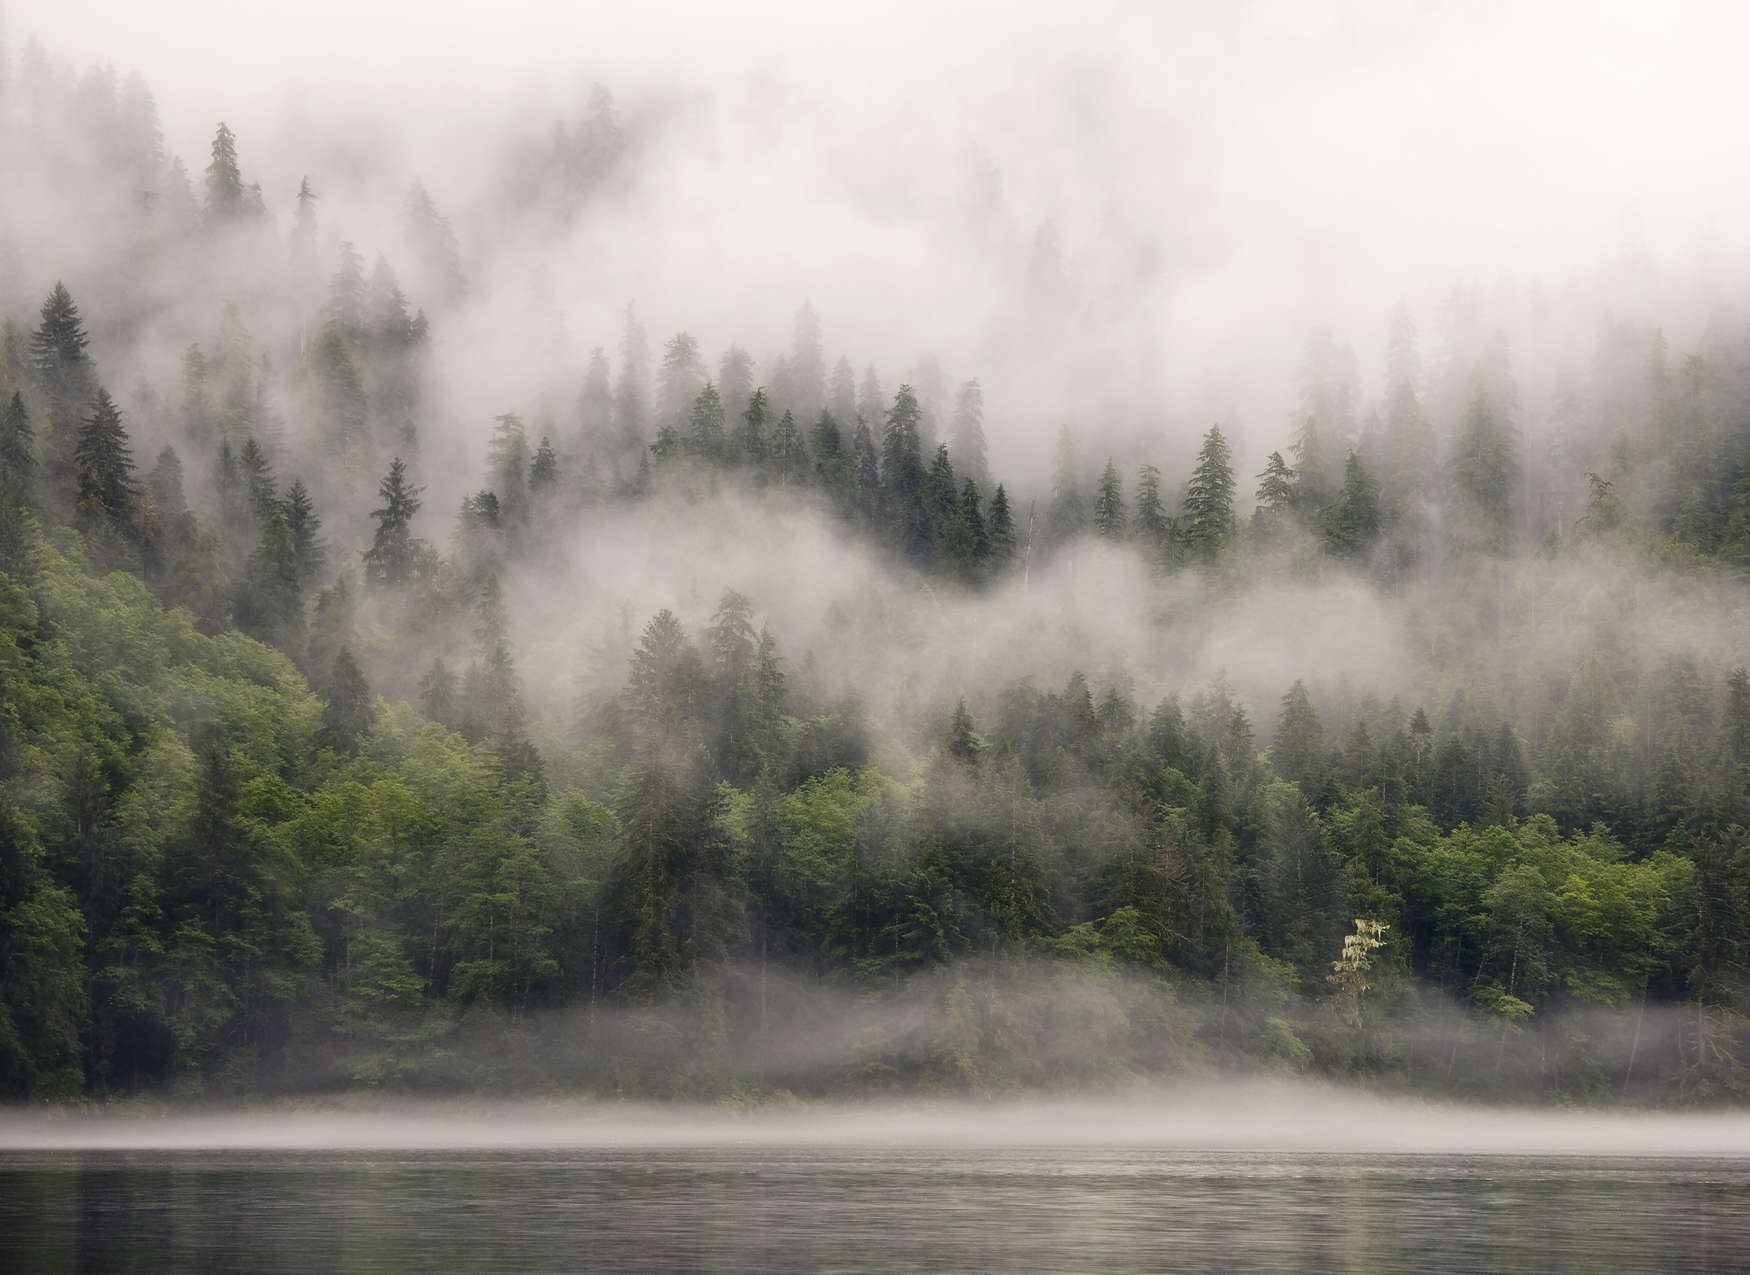             Digital behang mistig bos bij het meer - Groen, Wit, Beige
        